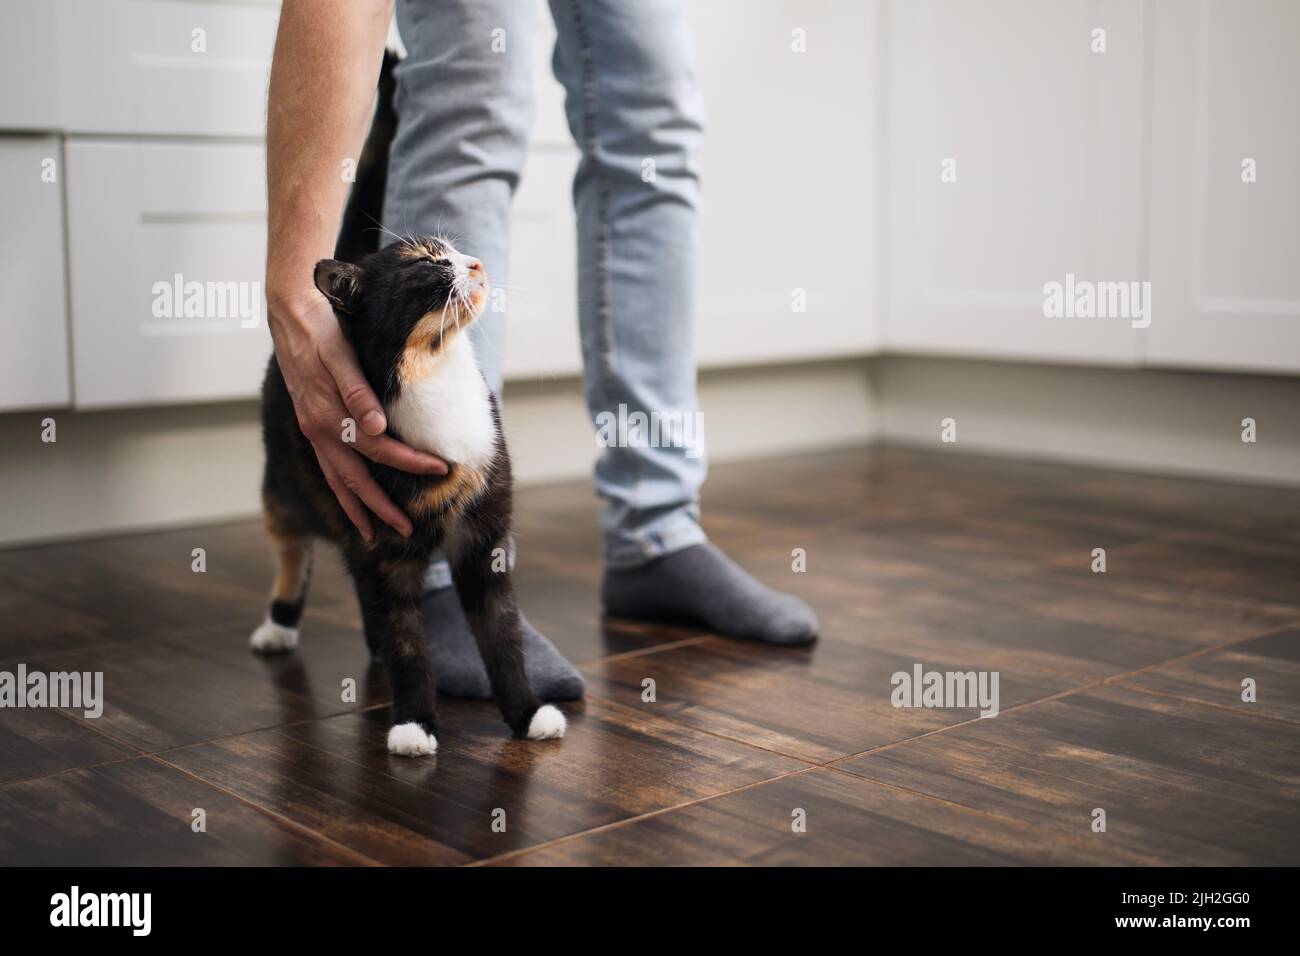 La vie domestique avec les animaux. Un homme qui a caressé son joli chat marbré à la maison Banque D'Images